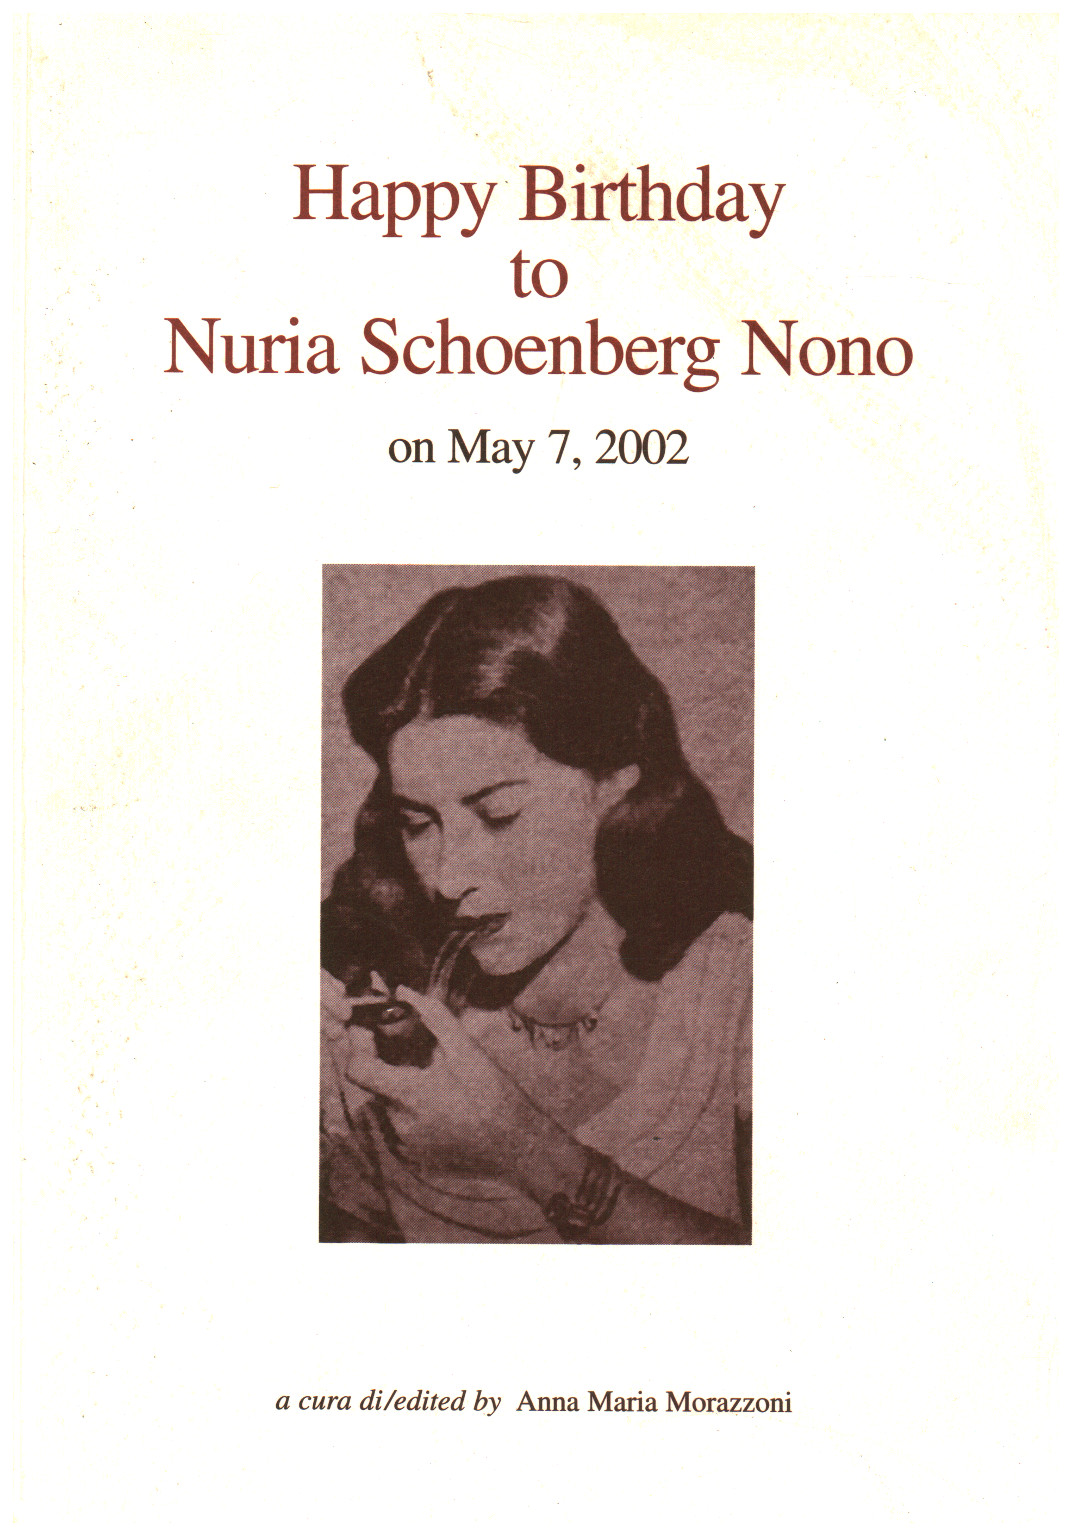 Joyeux Anniversaire A Nuria Schoenberg Nono Anna Maria Morazzoni Musica Musique Bibliotheque Dimanoinmano It